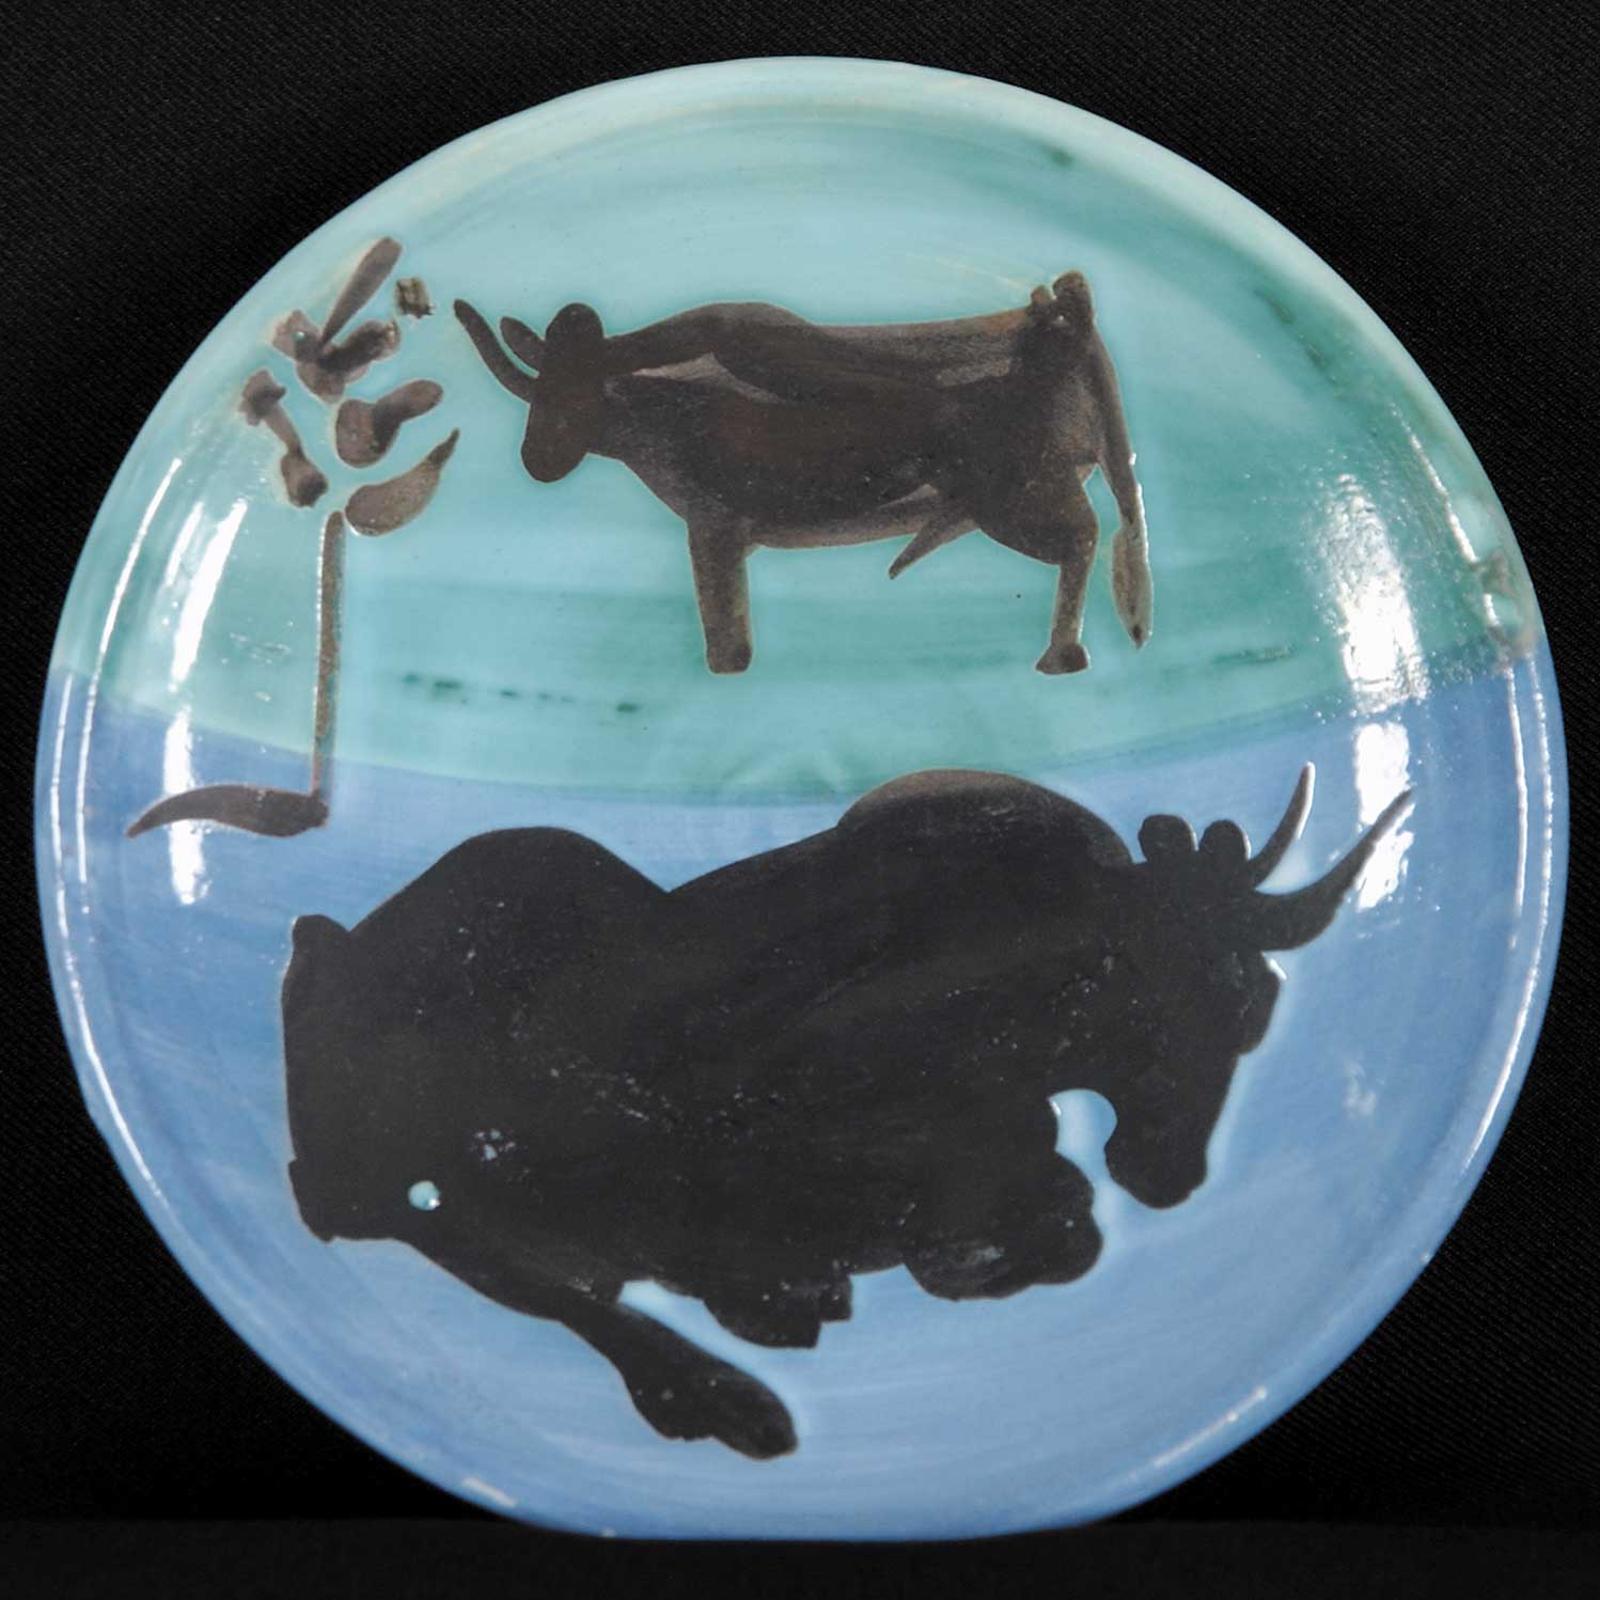 Pablo Ruiz Picasso (1881-1973) - Toros [2 bulls]